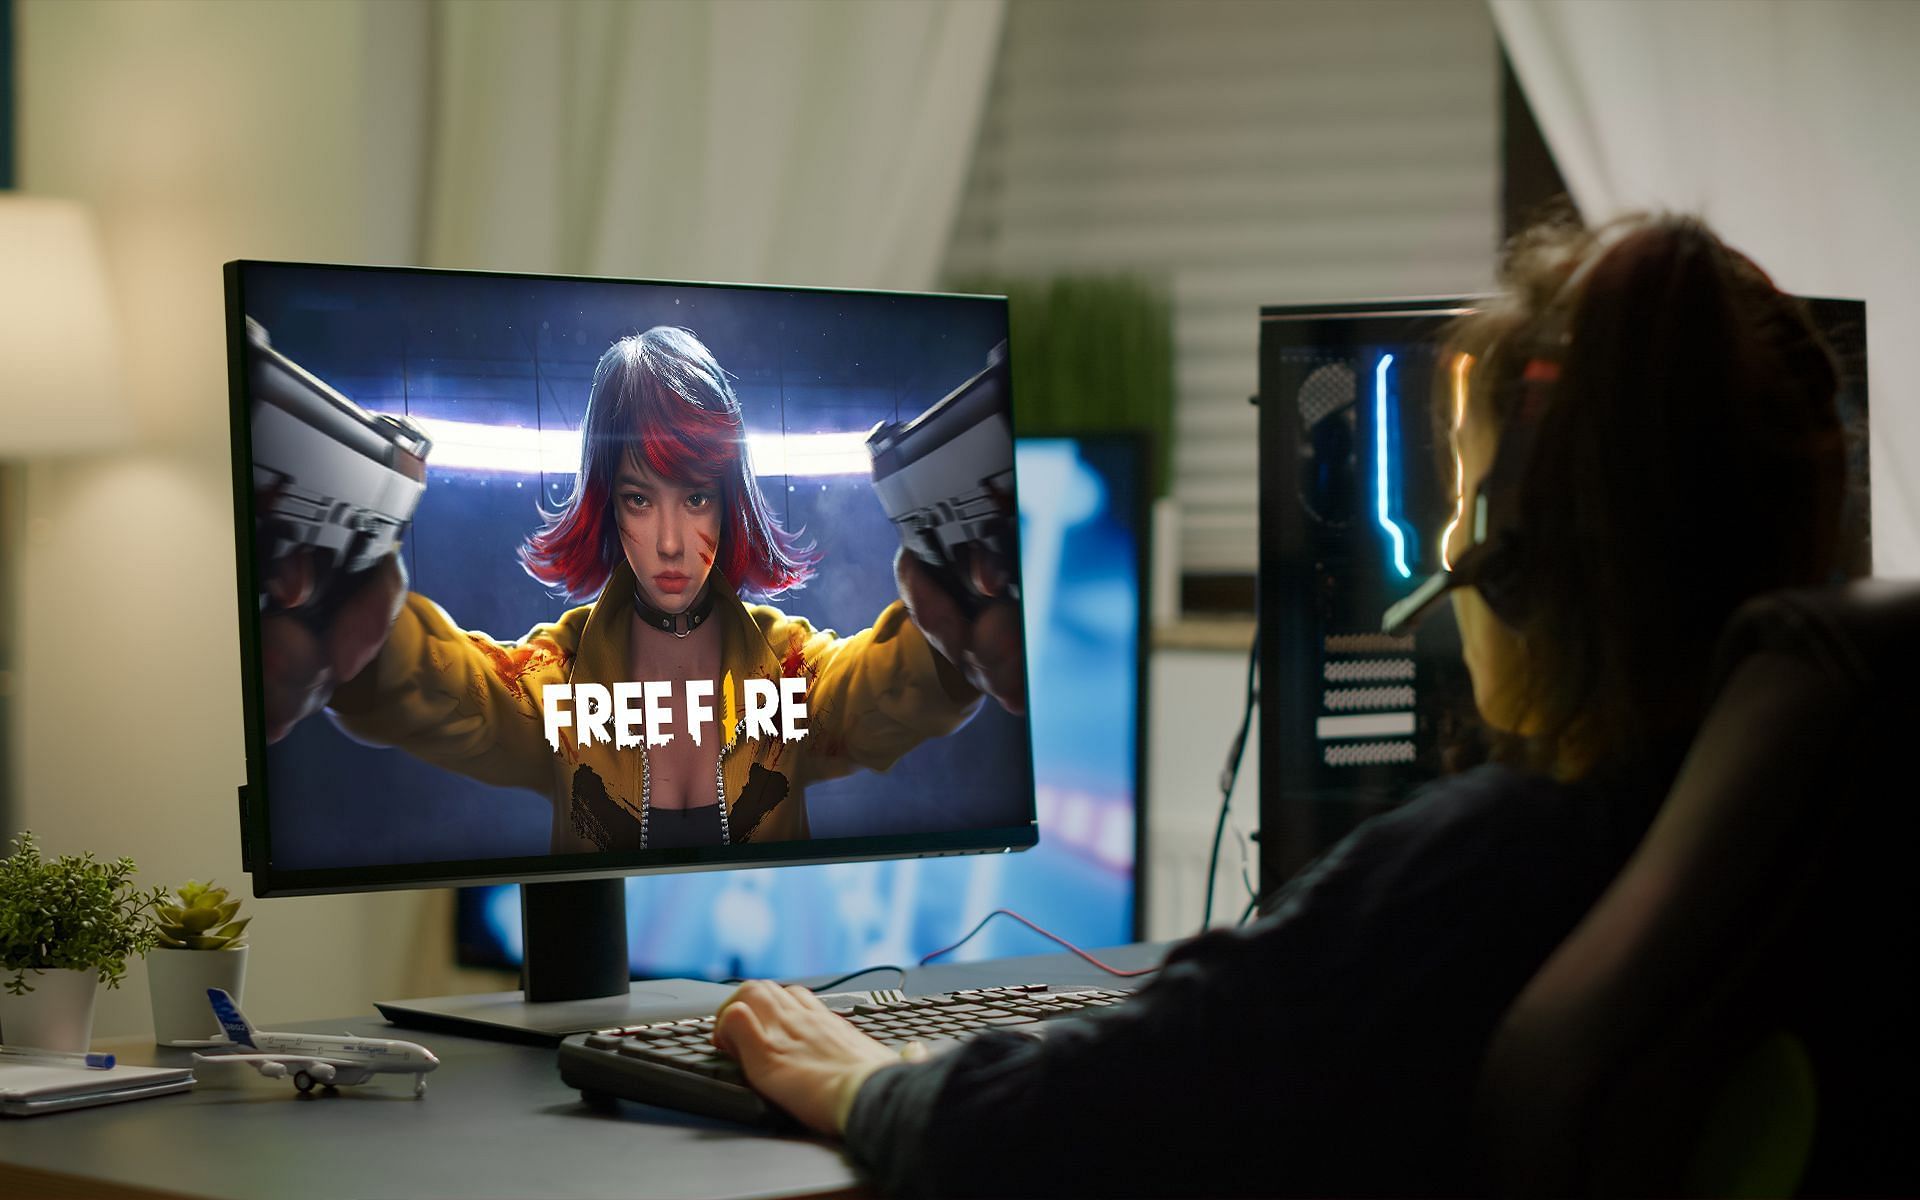 يمكن للاعبين استخدام المحاكيات إذا كانوا يريدون لعب Free Fire على أجهزة الكمبيوتر الخاصة بهم (الصورة من Sportskeeda)